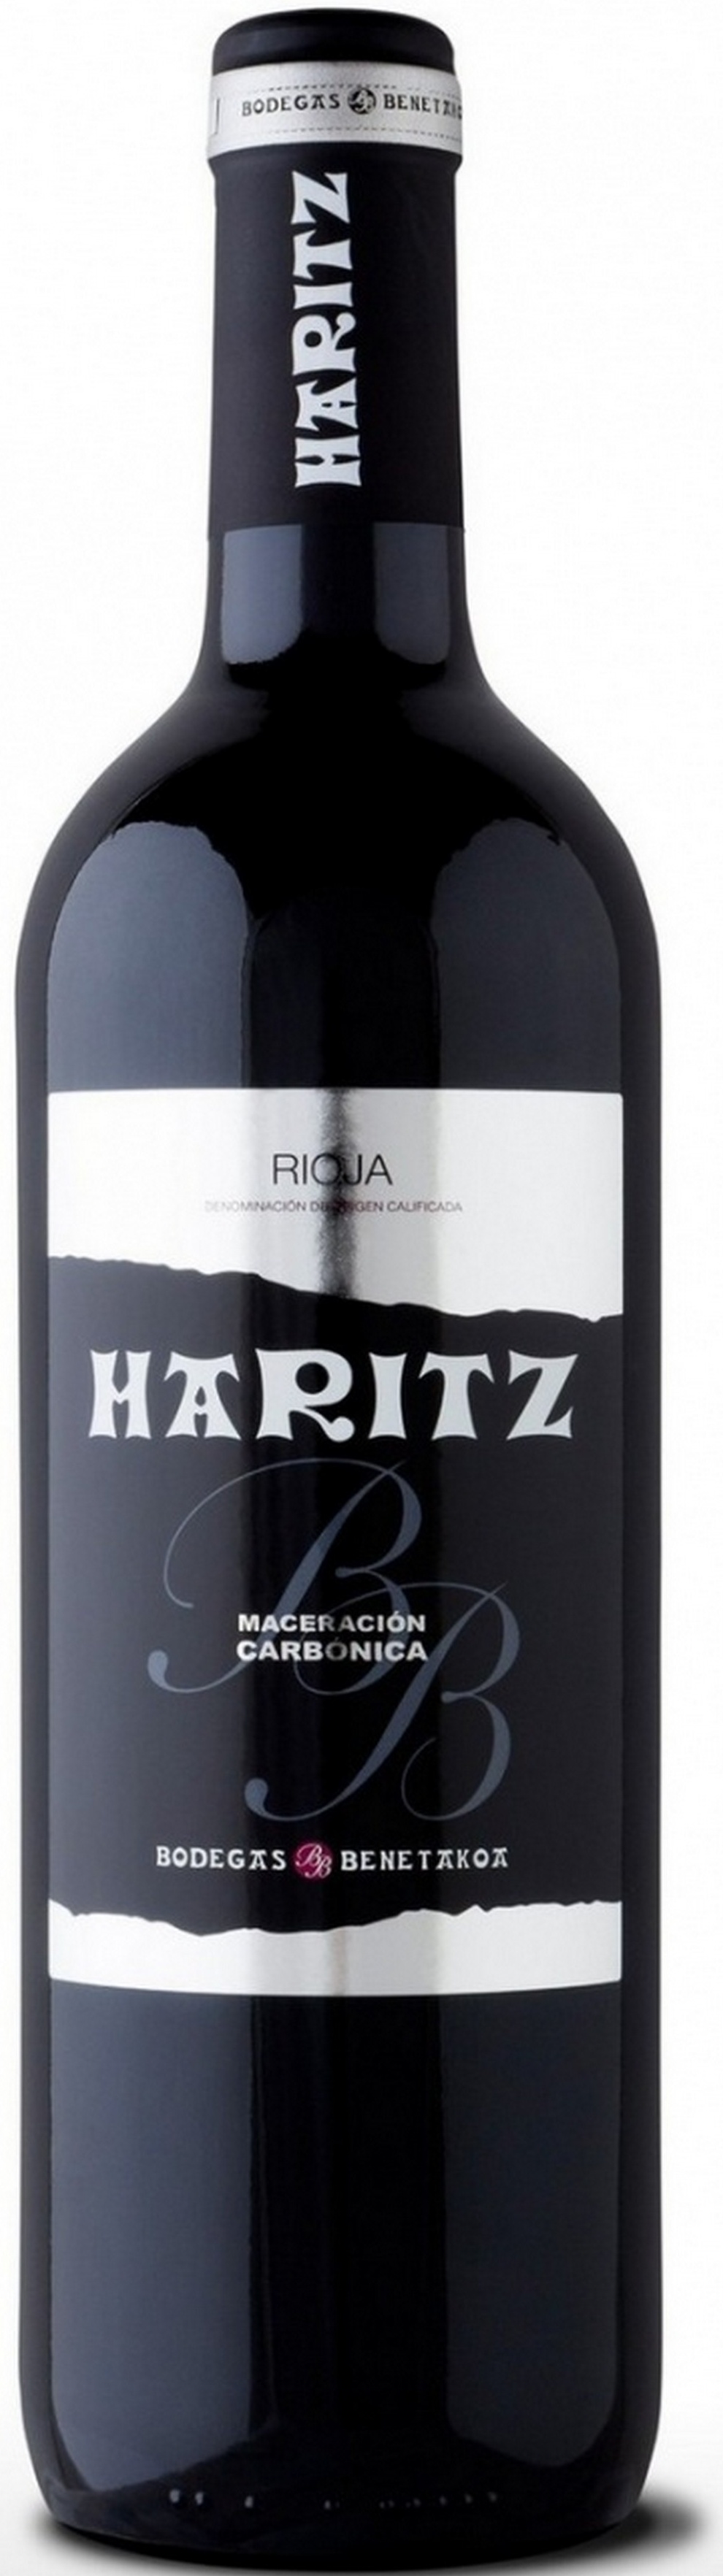 haritz-maceracion-carbonica-2019